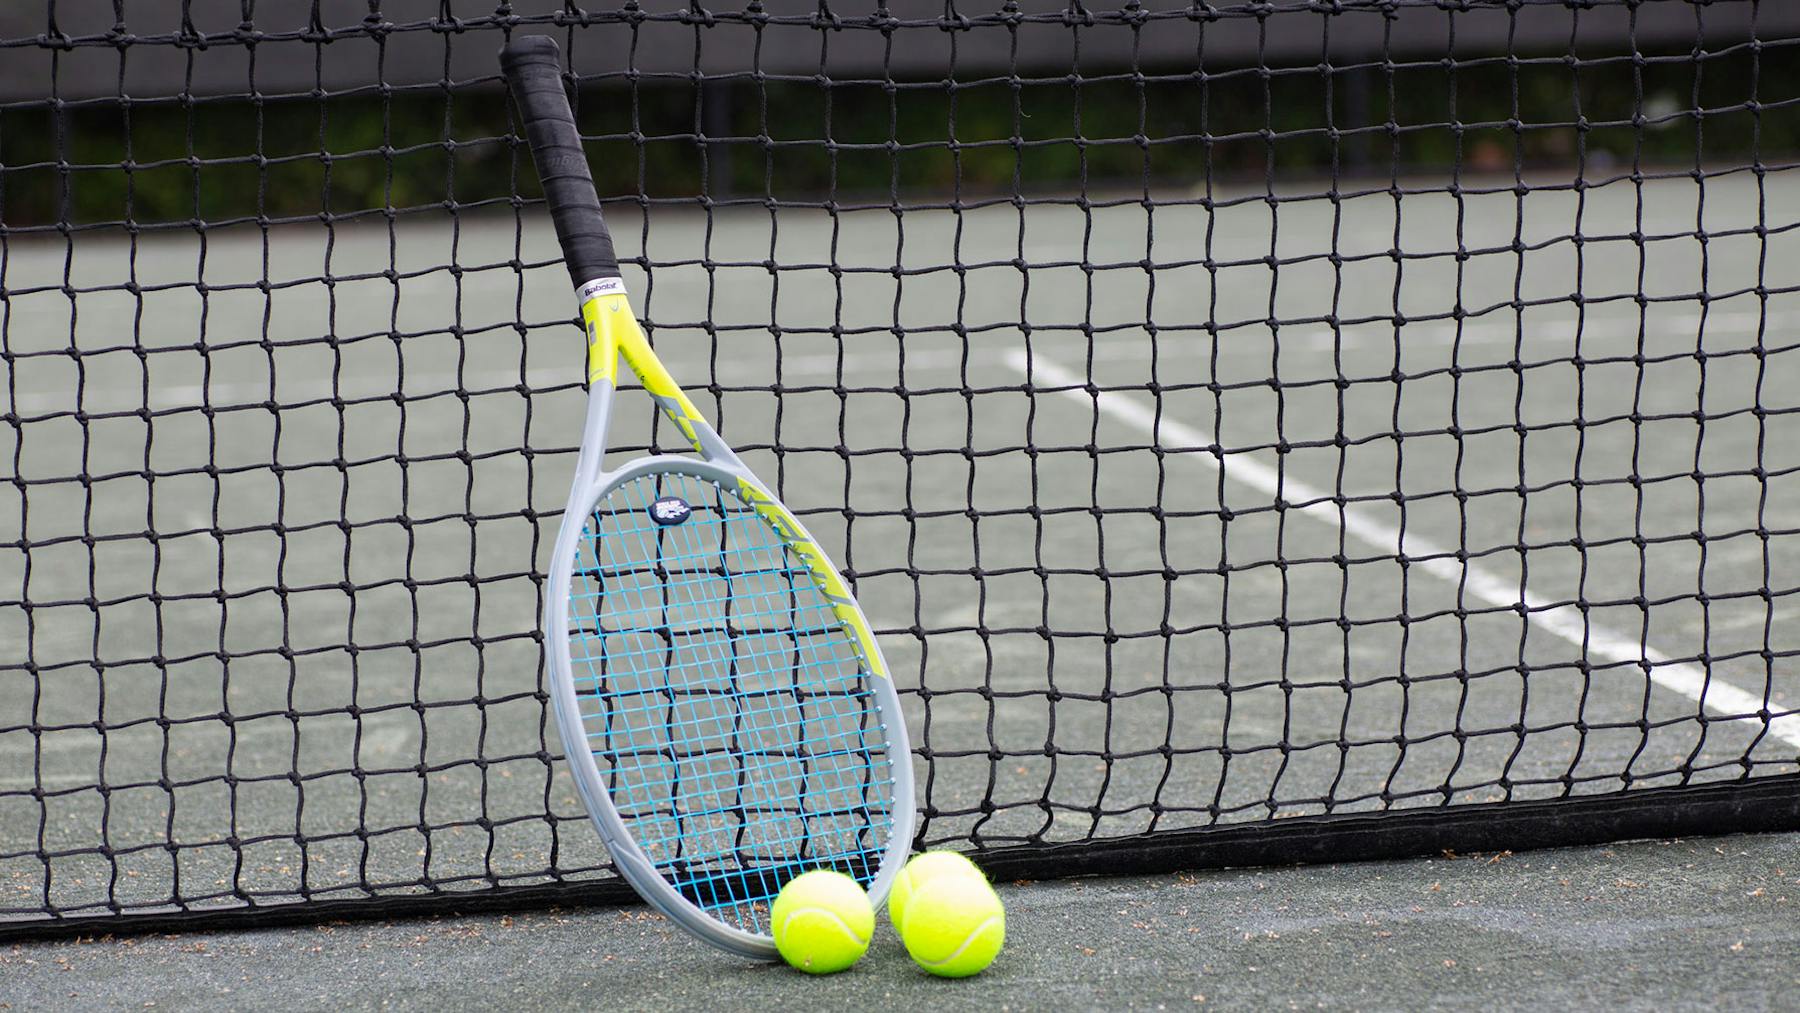 Buy Tennis Balls Online for a Winning Serve 